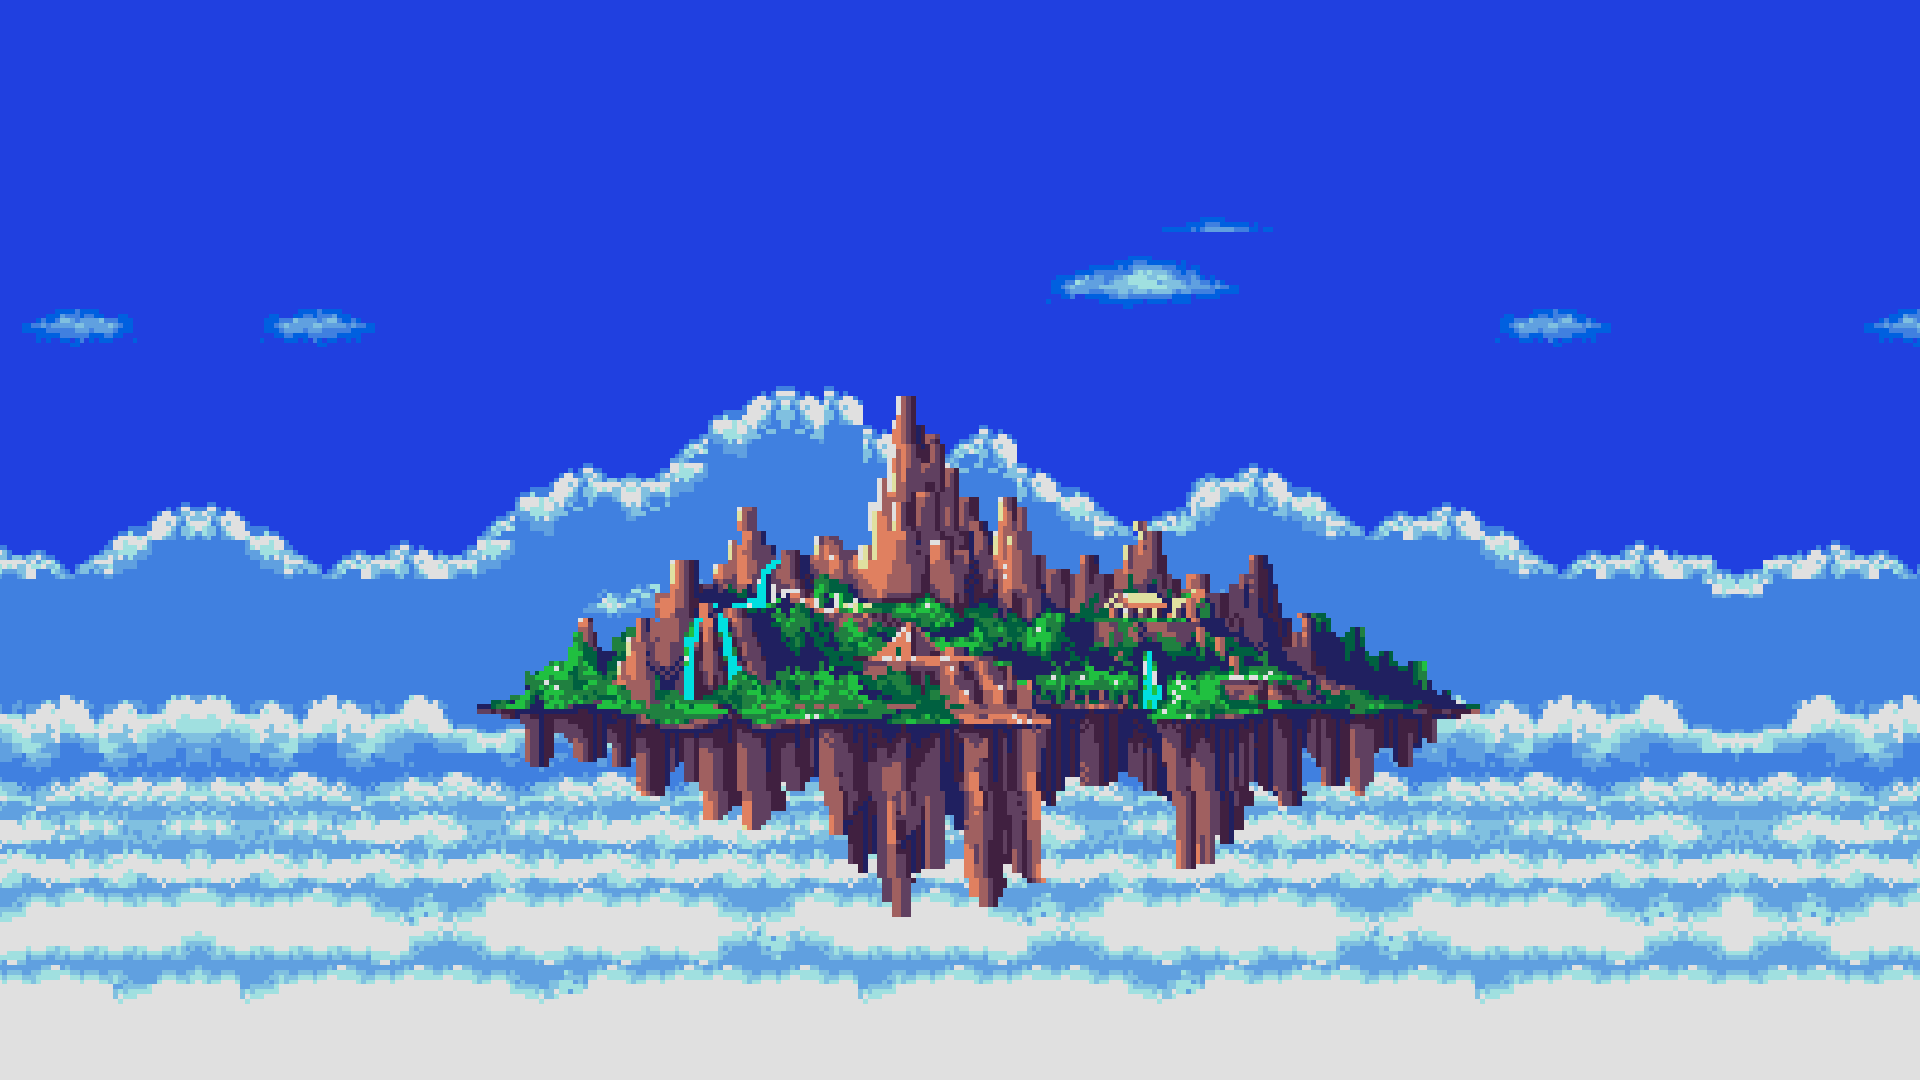 Sonic 3 island. Пиксельный остров. Пиксель арт. Пиксельное море. Остров из пикселей.